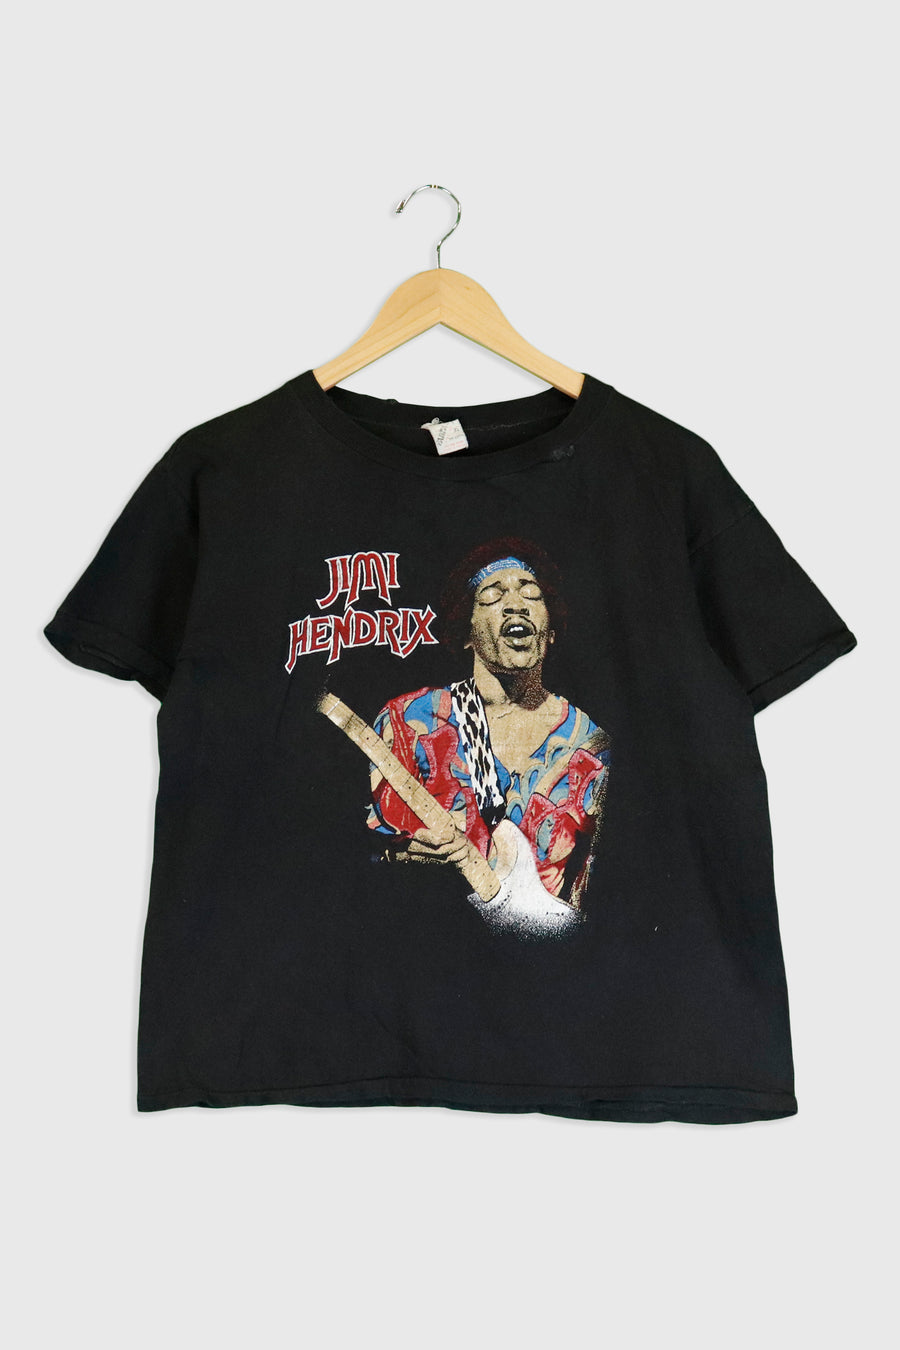 Vintage 1970 Jimi Hendrix The Experience T Shirt Sz XL